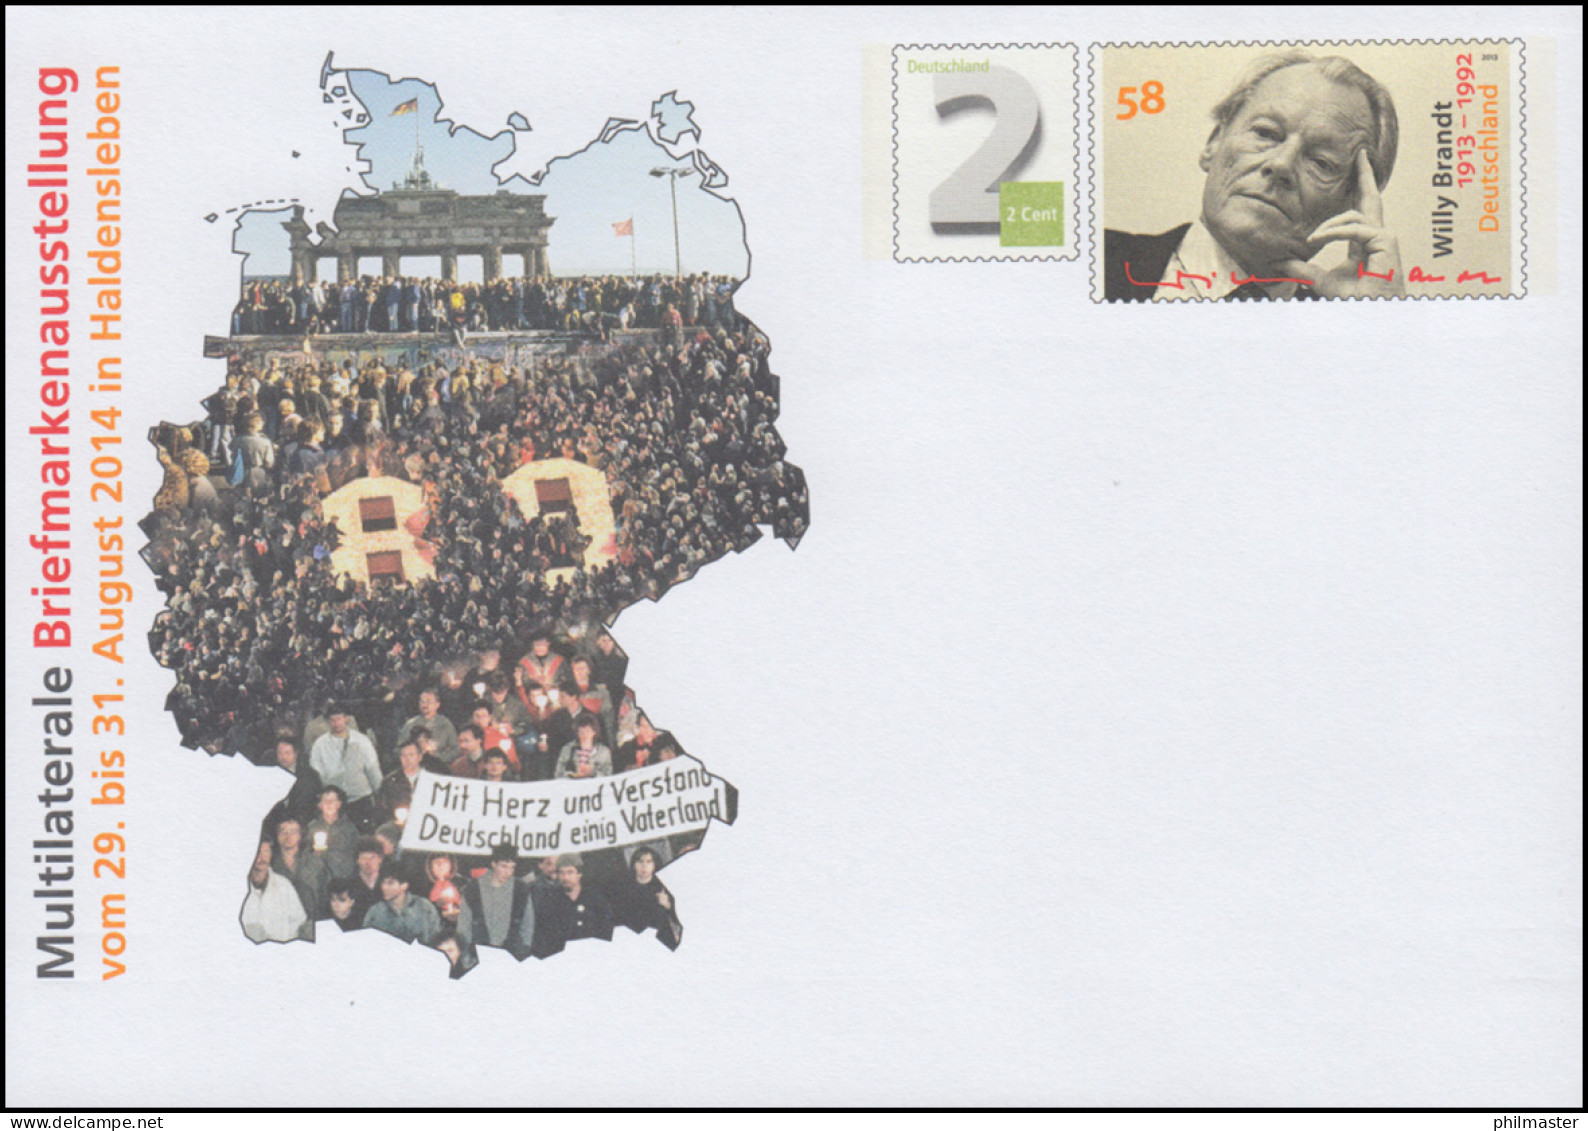 USo 334 Briefmarkenausstellung Haldensleben 2014, ** - Covers - Mint